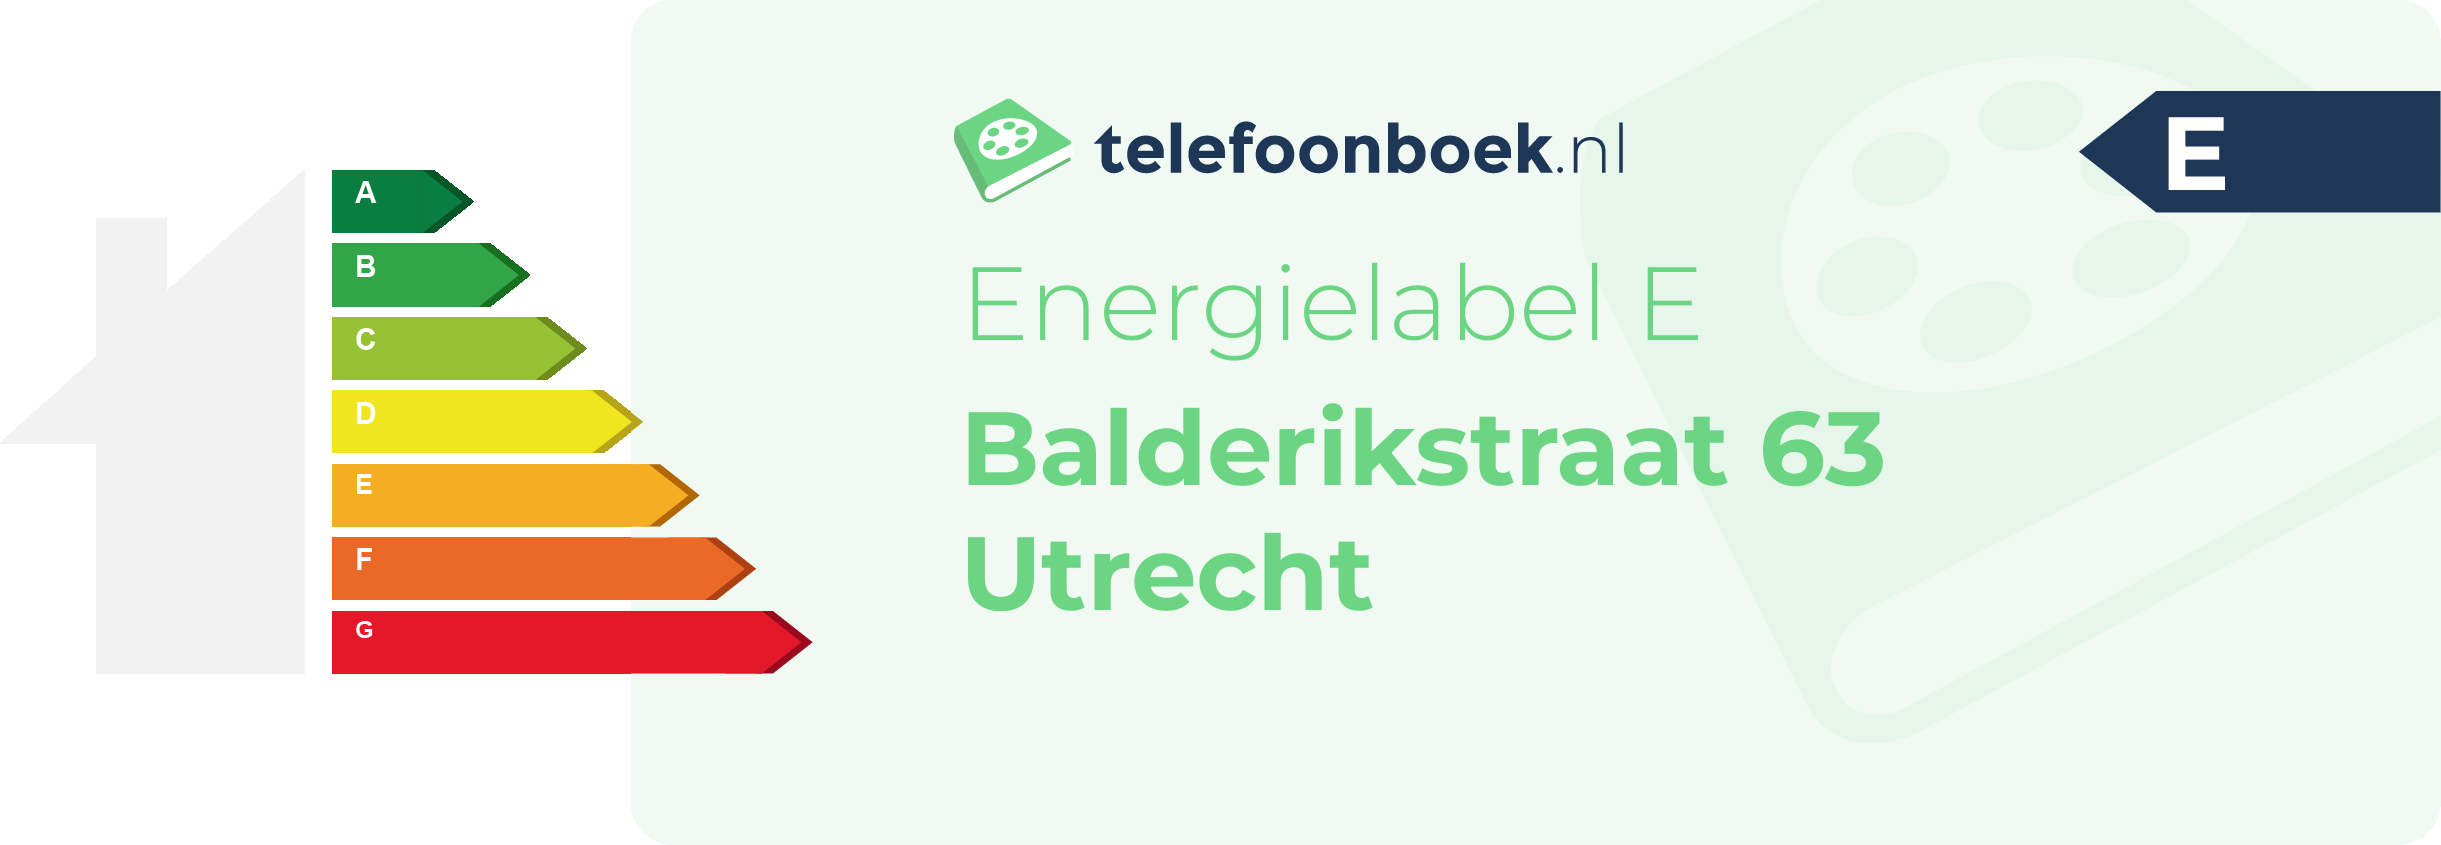 Energielabel Balderikstraat 63 Utrecht